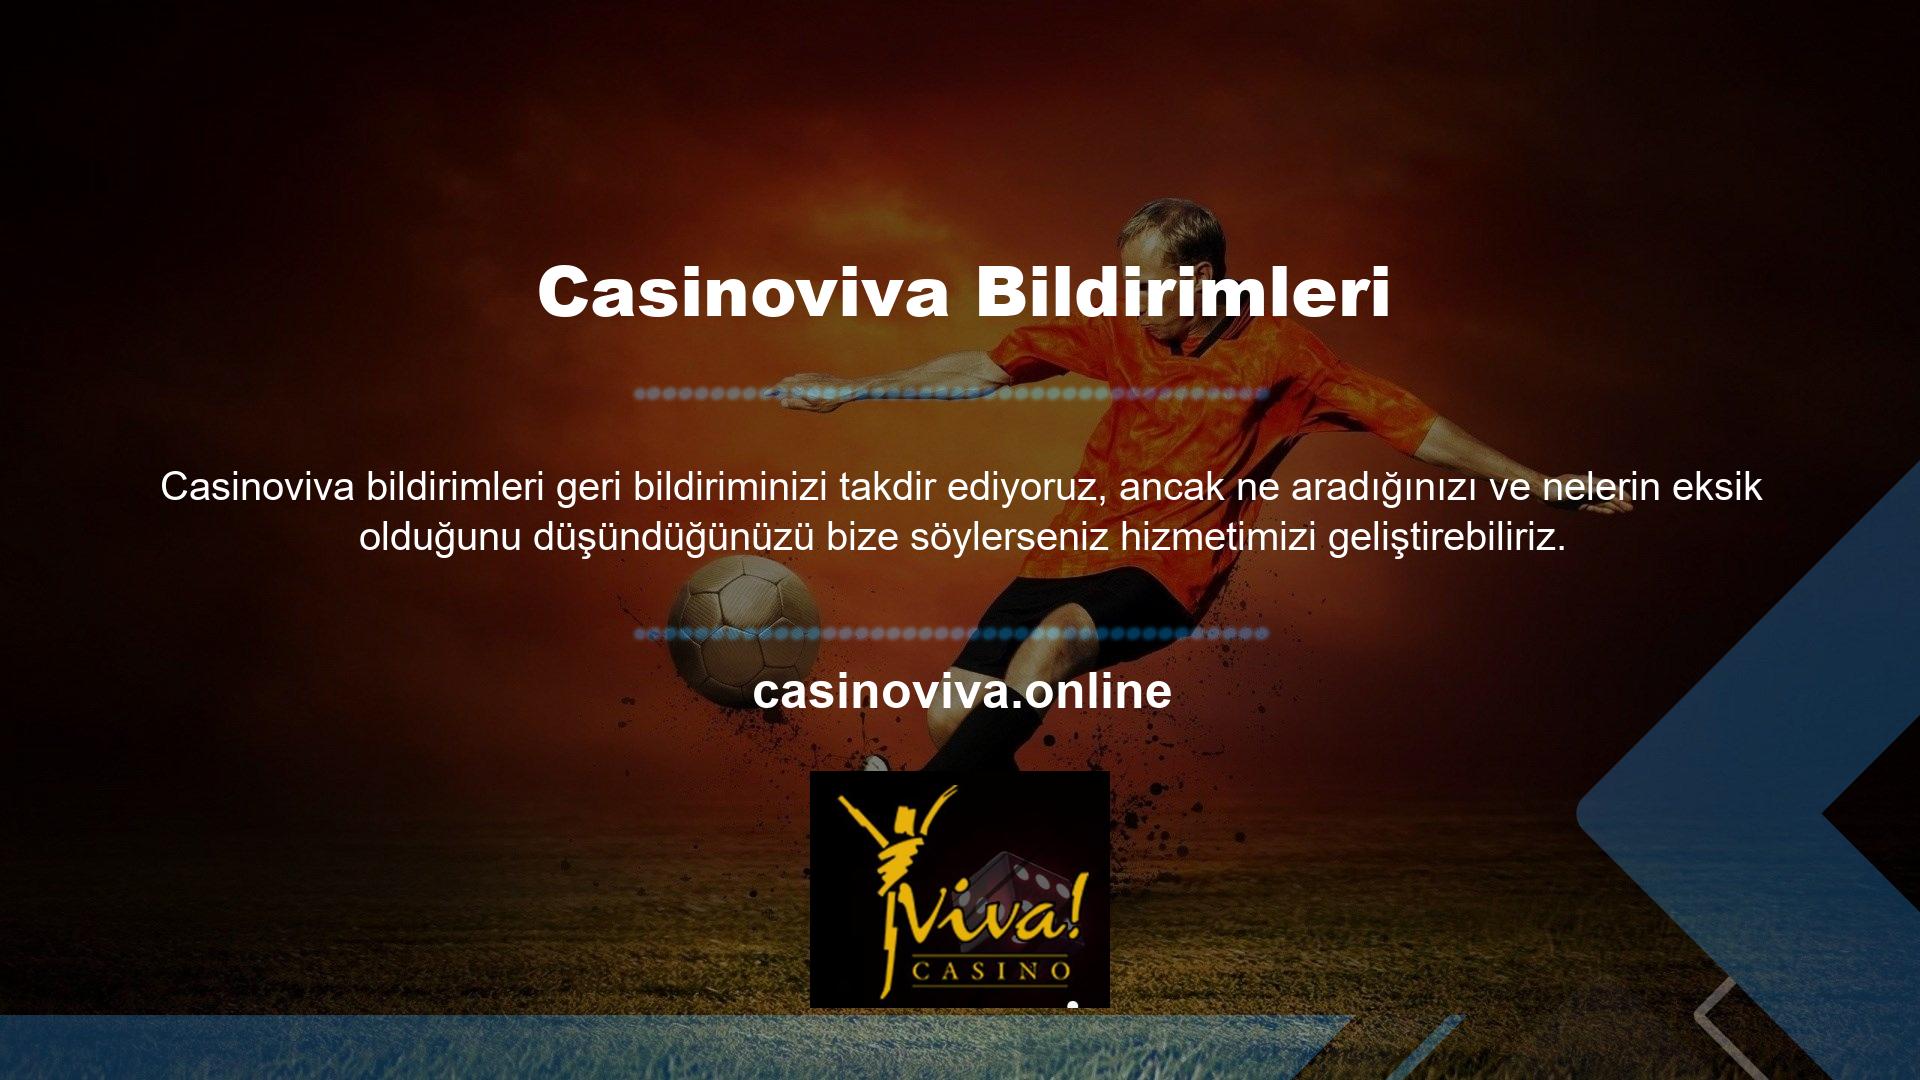 Çevrimiçi casino sitesindeki deneyiminizi geliştirmek için sunduğumuz bilgilere dikkat etmeniz önemlidir